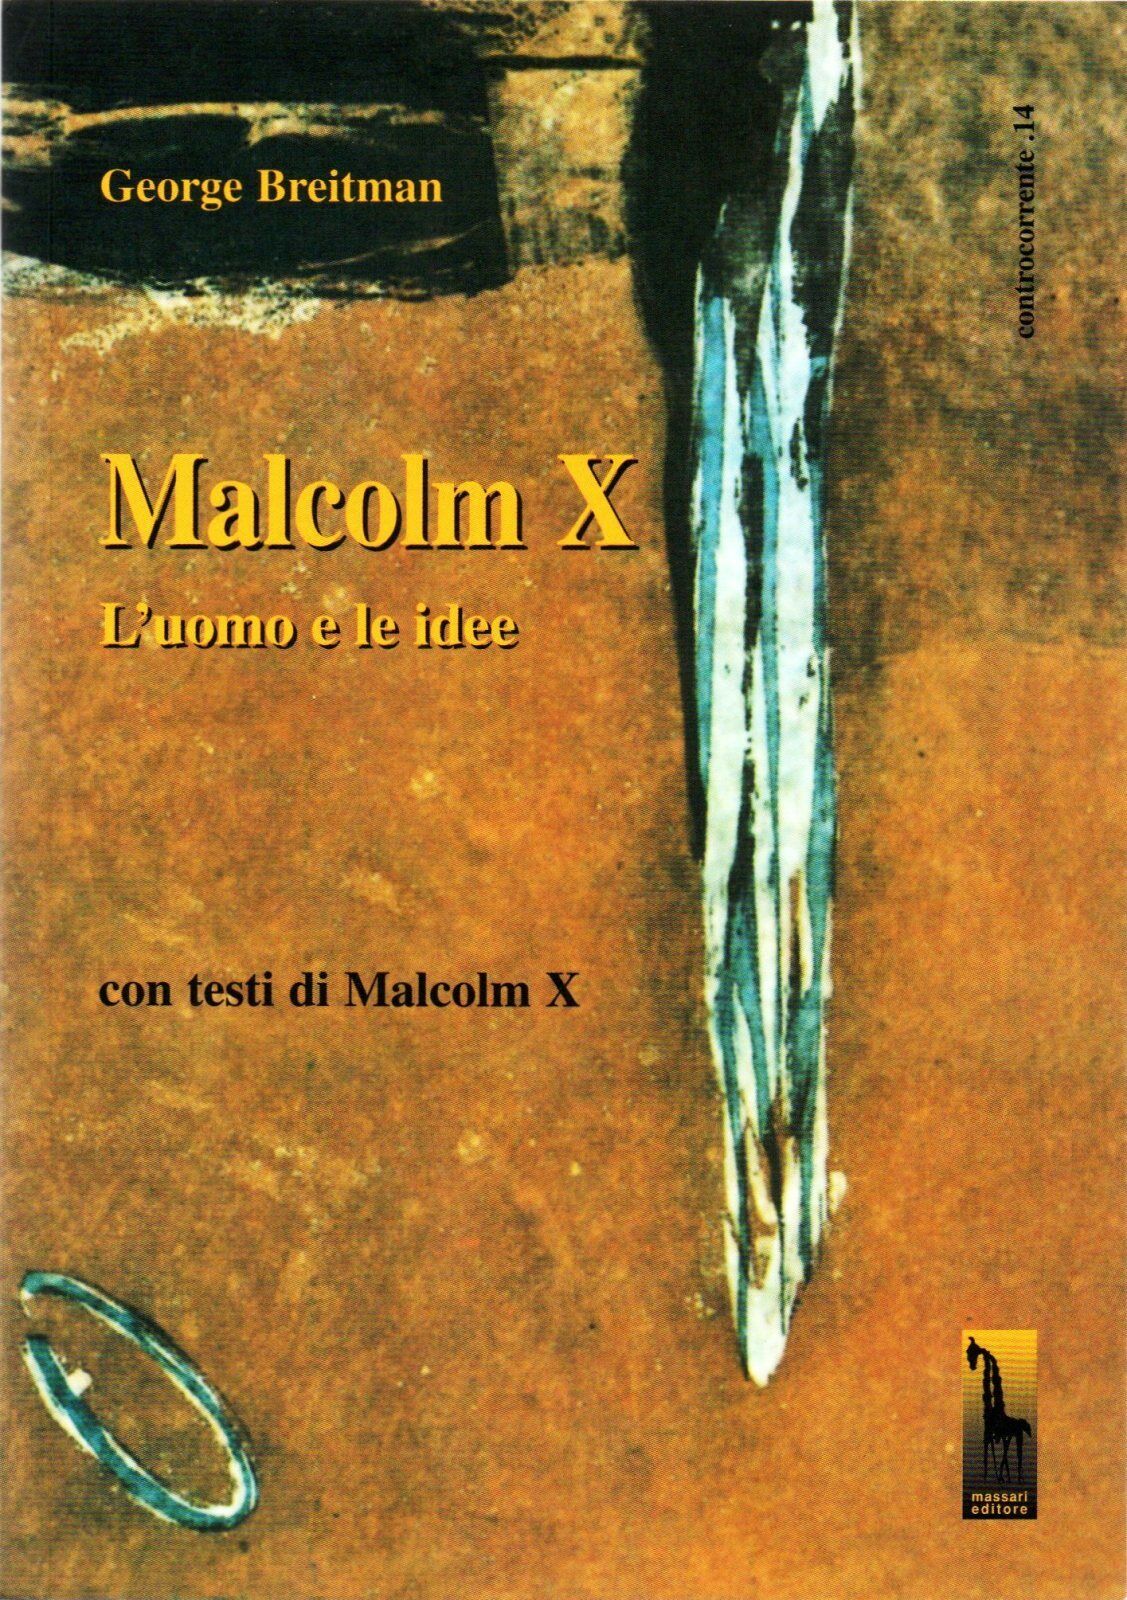 Malcolm X. L'uomo e le idee di George Breitman,  1992,  Massari Editore